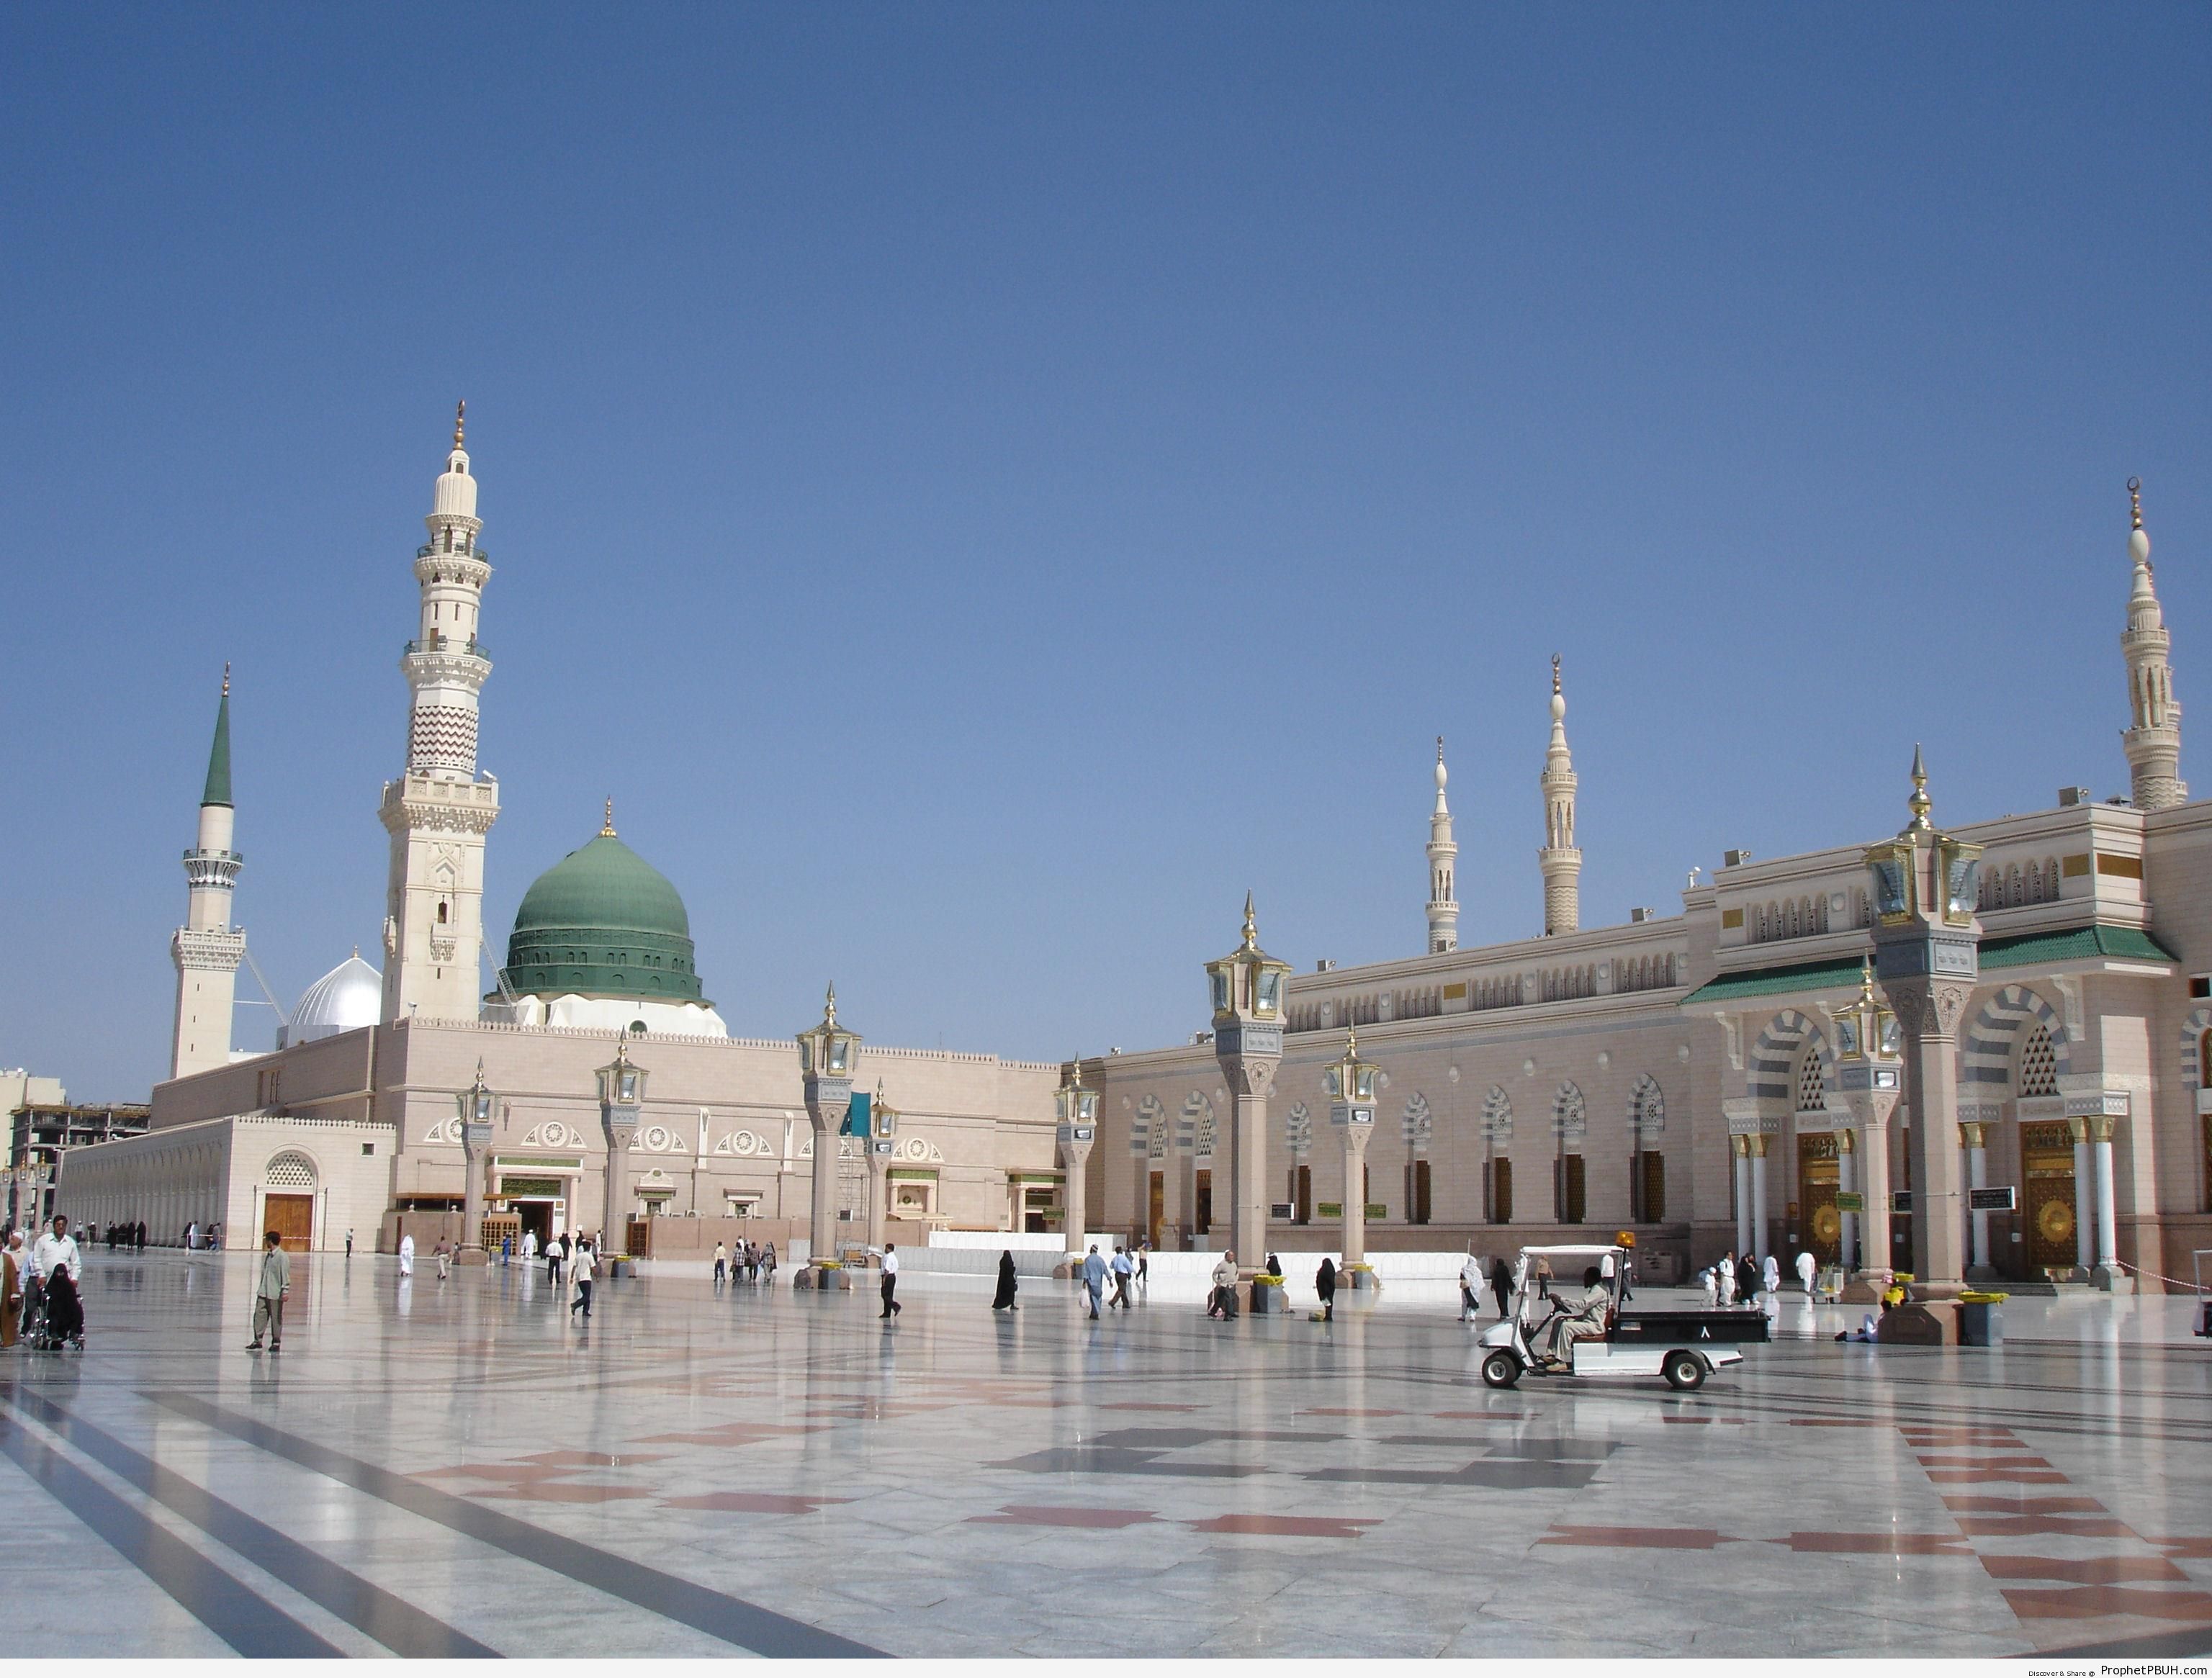 Медина что это. Масджид Аль-Наби Медина. Мечеть пророка (Масджид АН-Набави). Мечеть АН-Набави, Медина (Саудовская Аравия). Аль-Масджид АН-Набави в Медине.